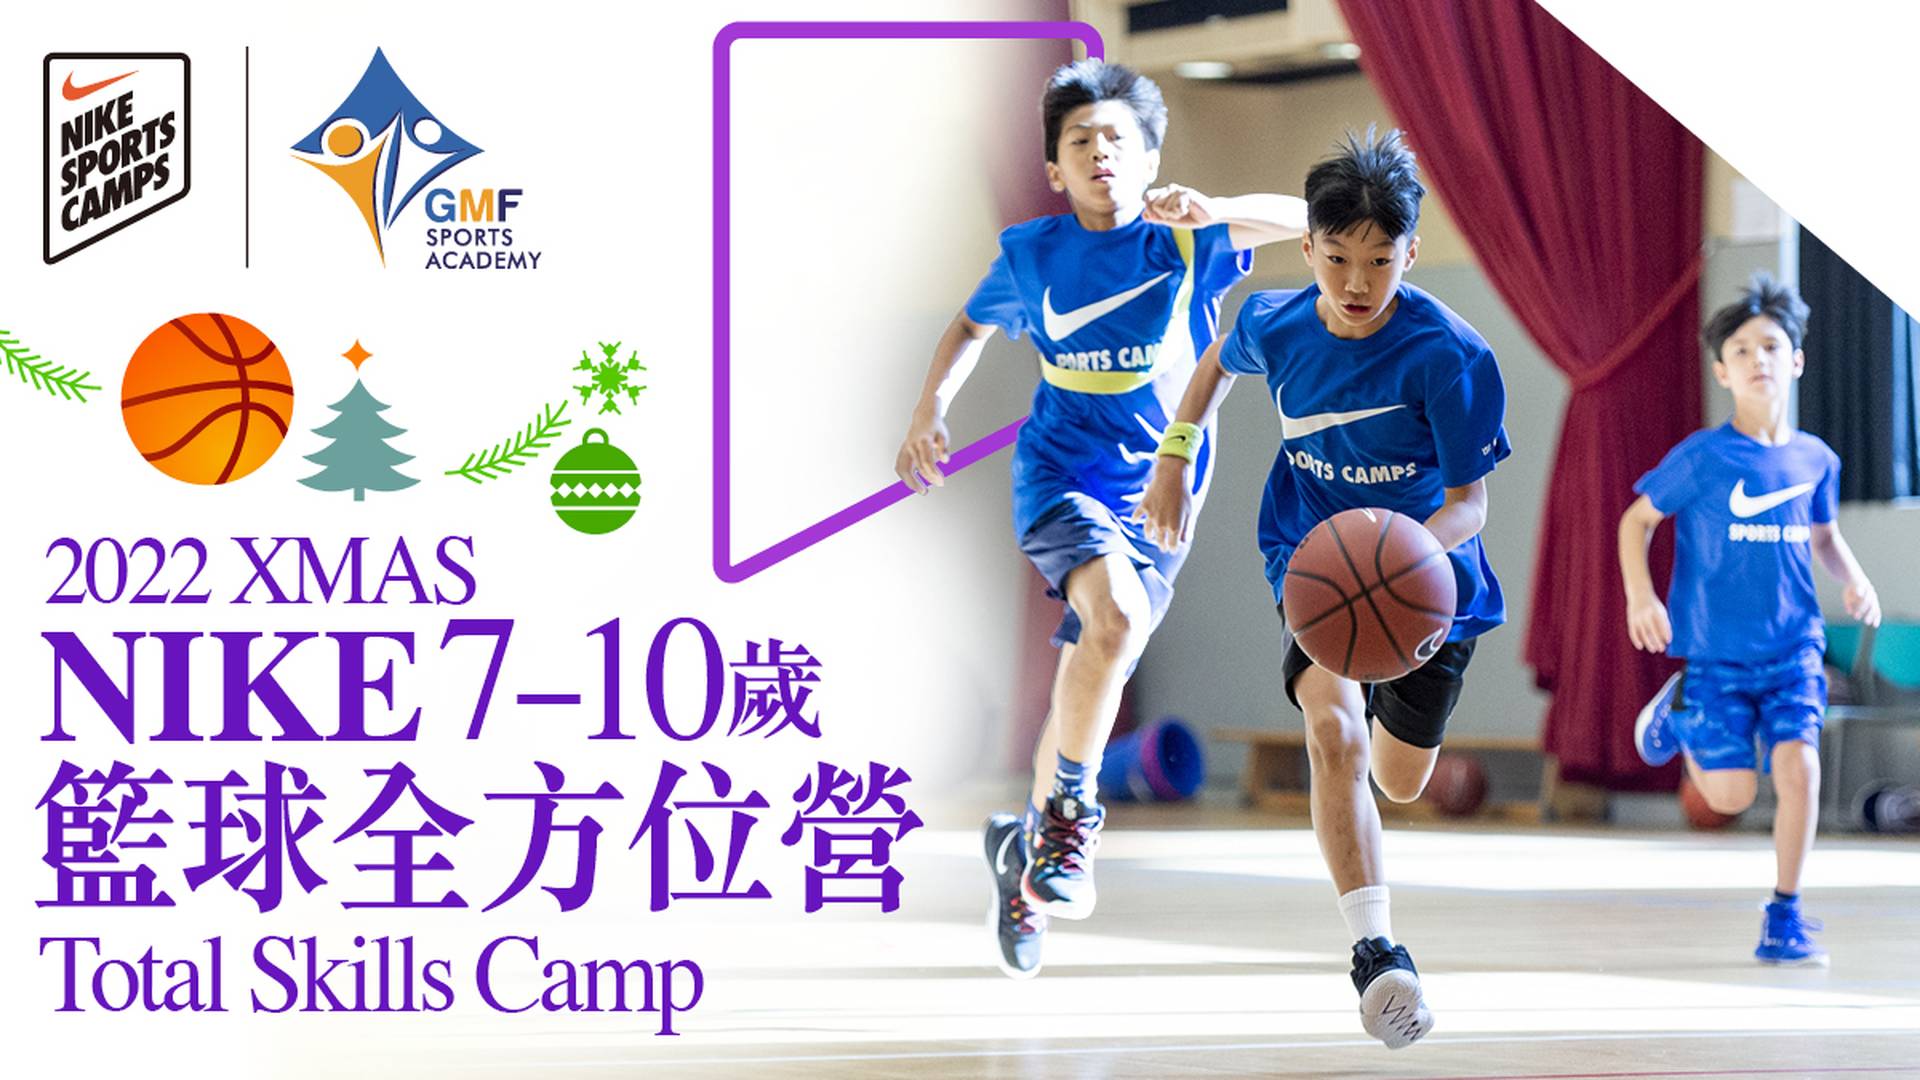 XMAS Nike Total Skills Camp  聖誕 NIKE 籃球全方位營 (7 - 10 歲)